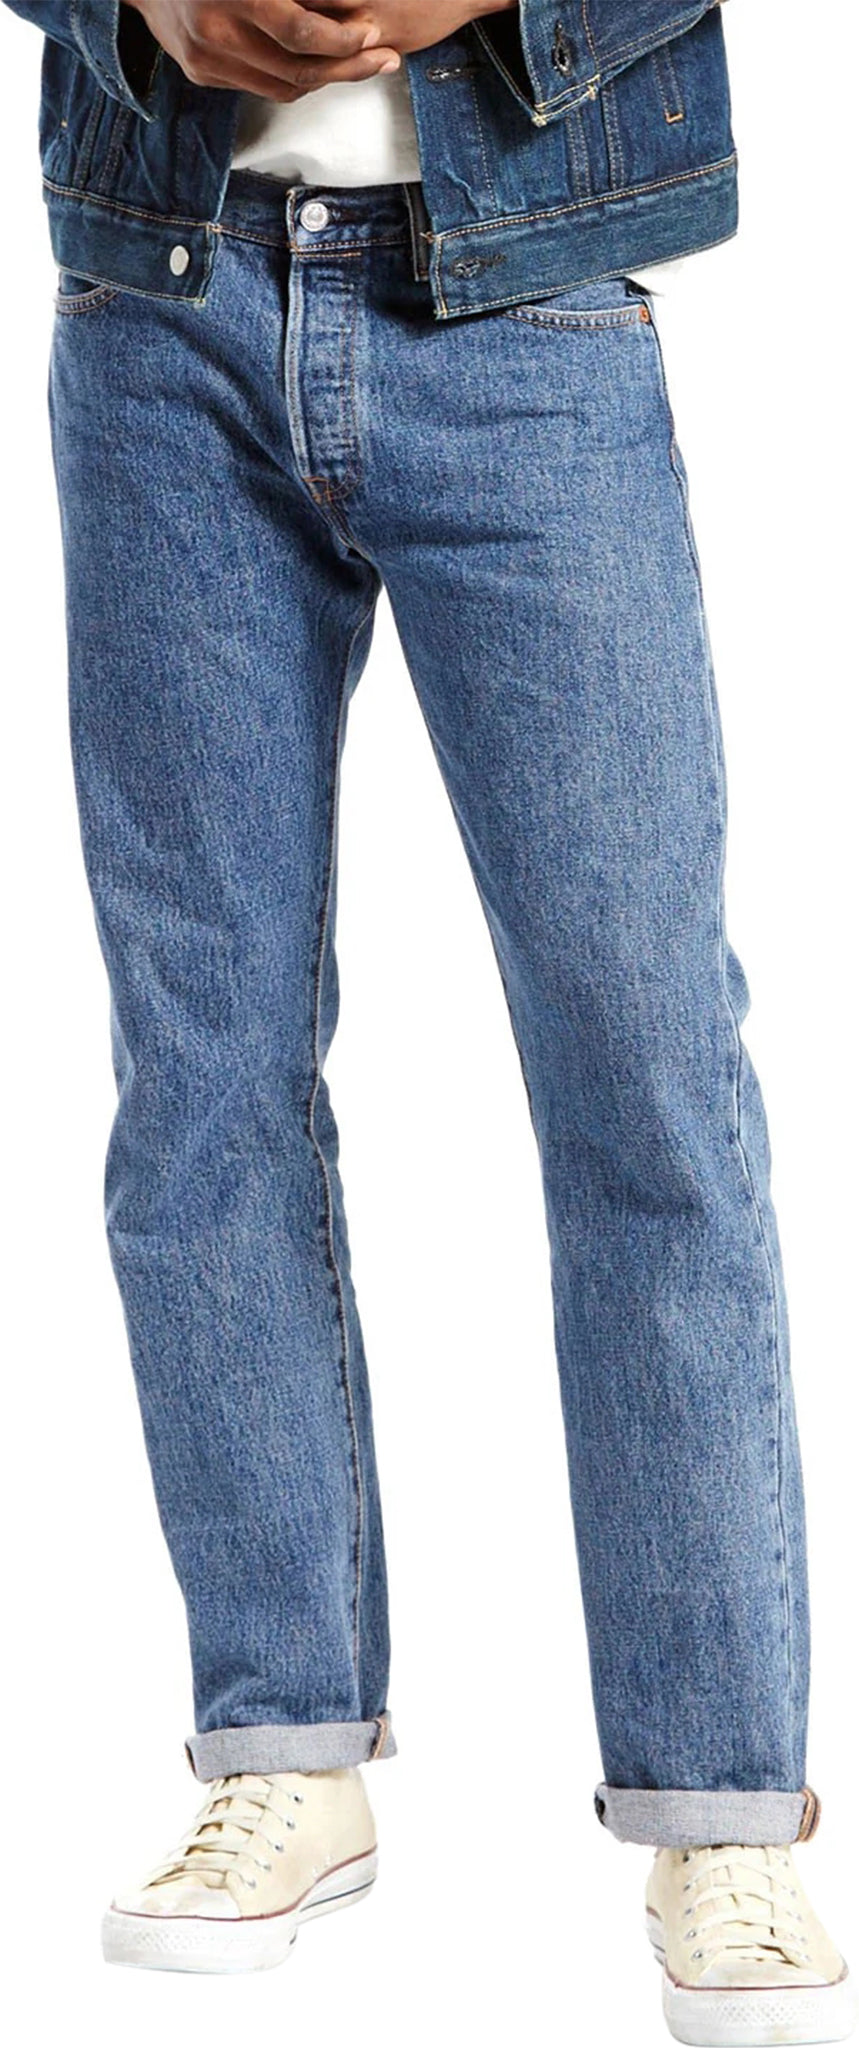 Levi's 501 Original Fit Jeans - Men's